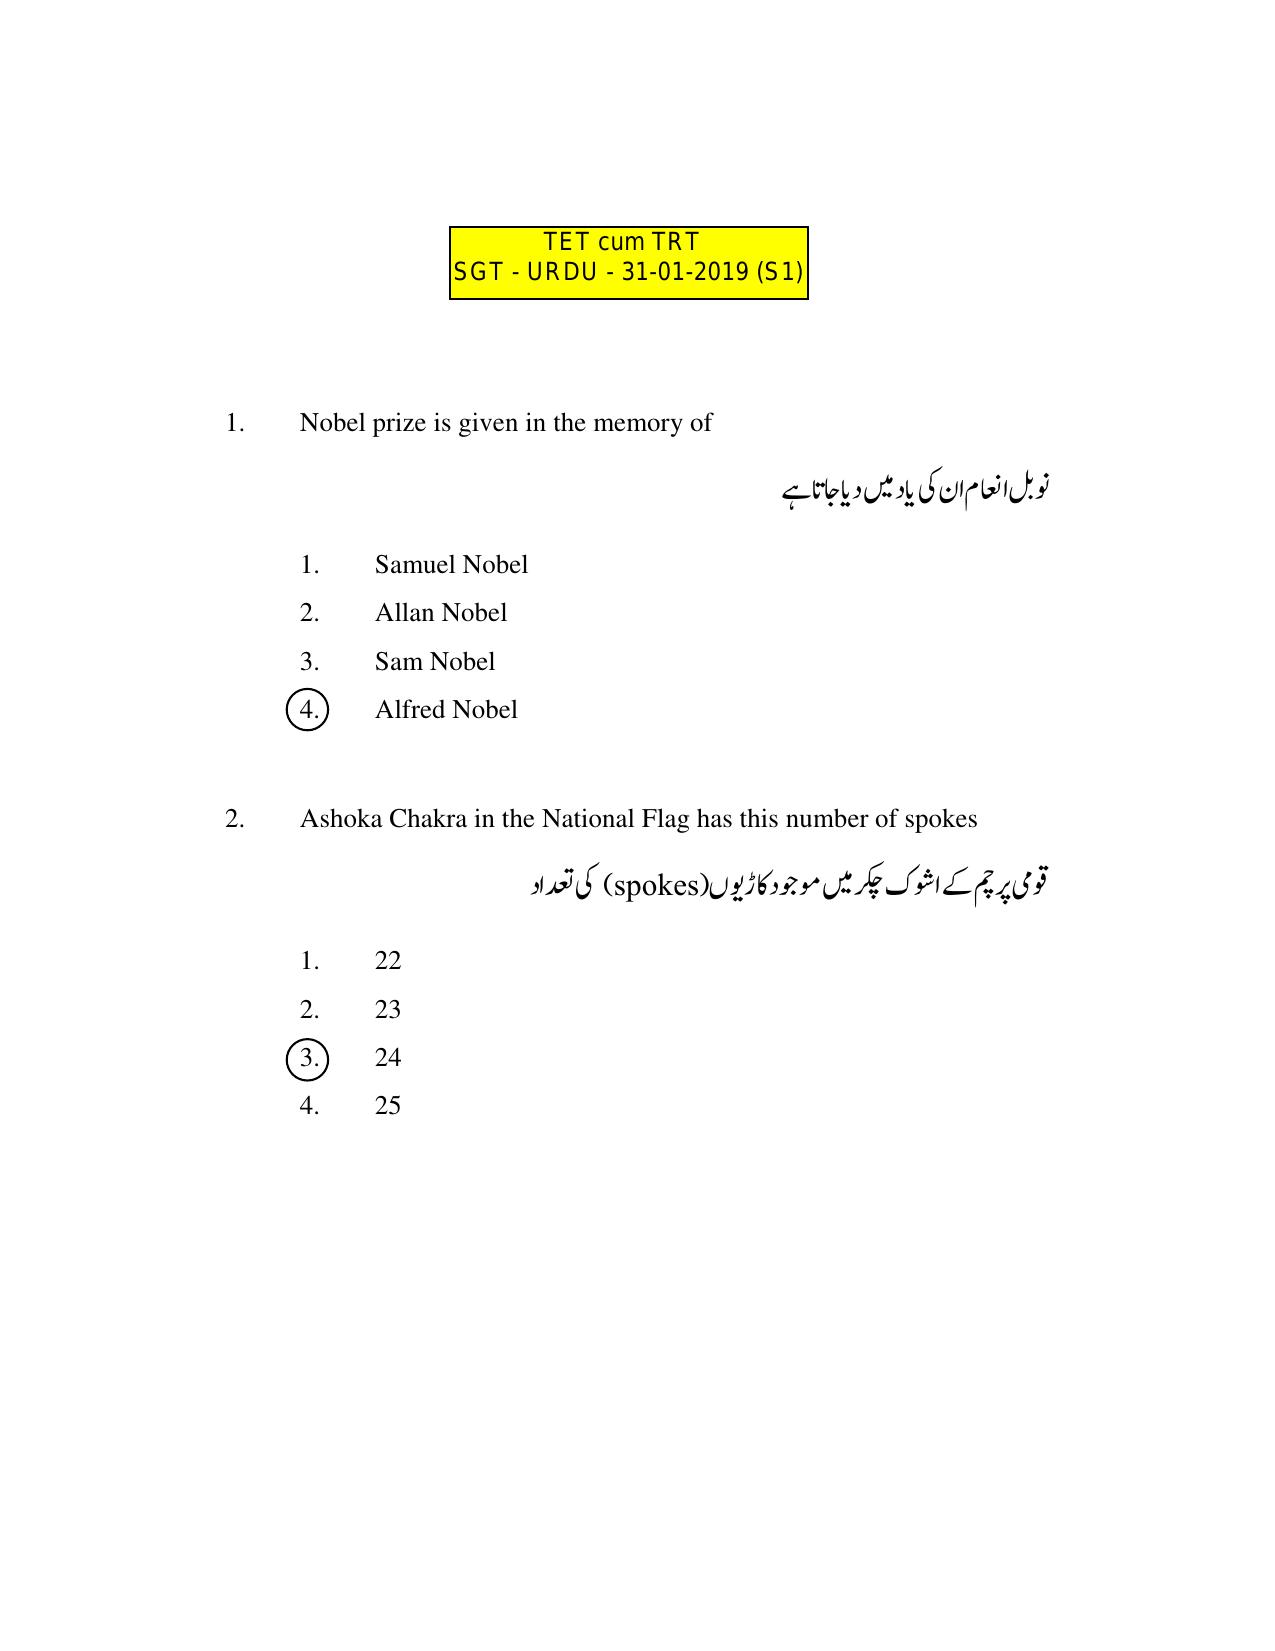 AP DSC SGT Urdu S1 Previous 2019 Question Paper PDF - Page 1